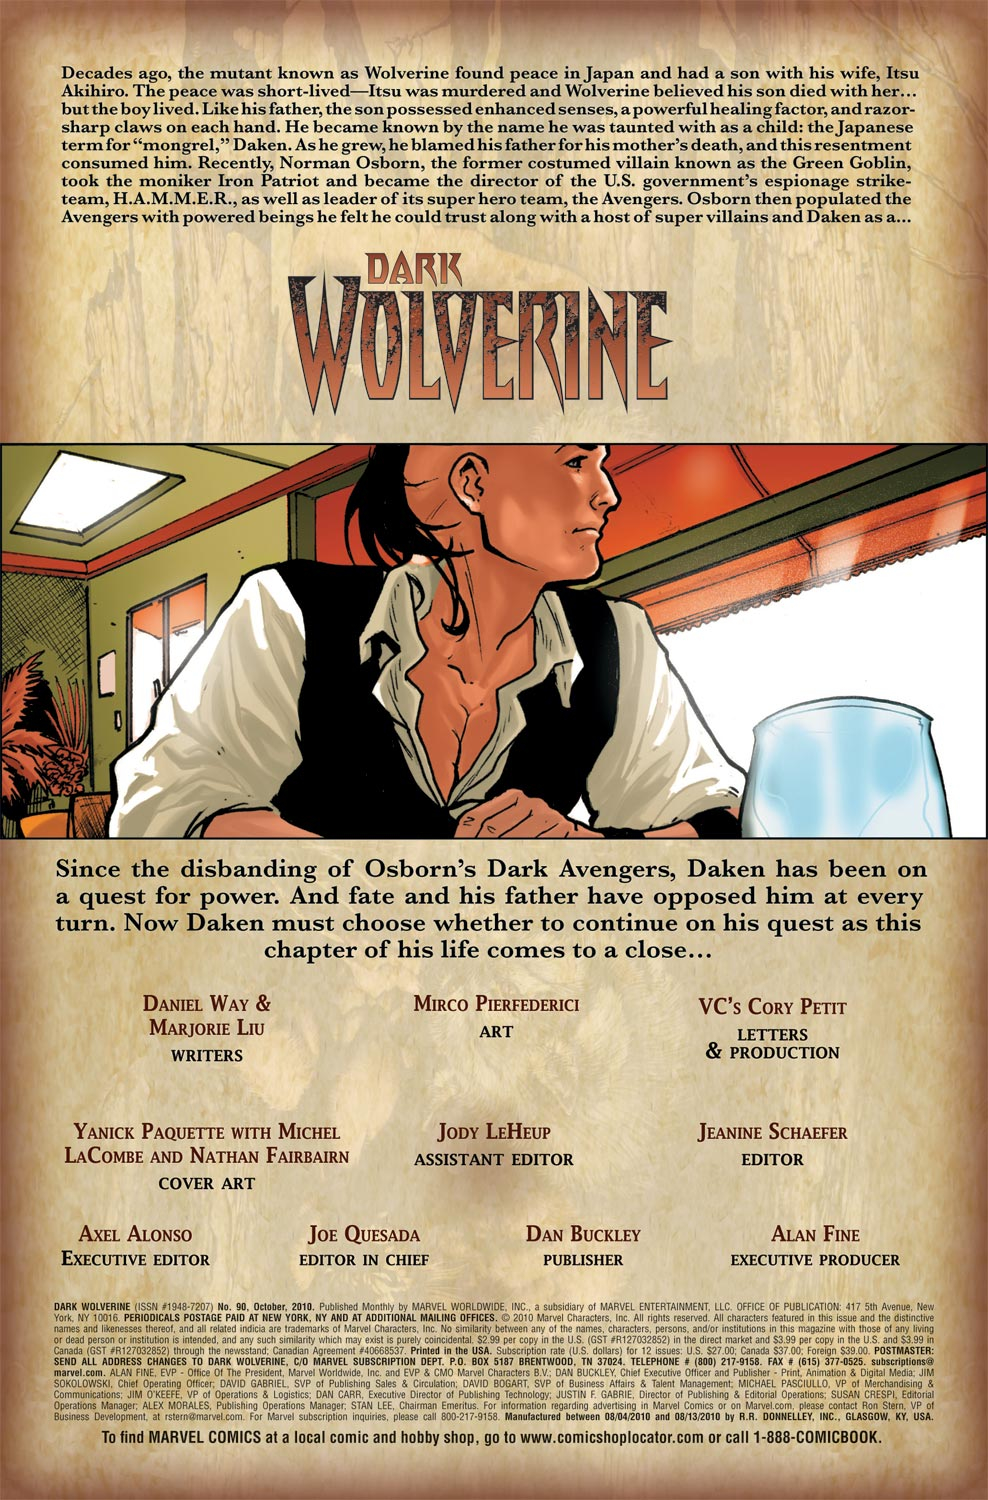 Dark Wolverine 90 Page 1